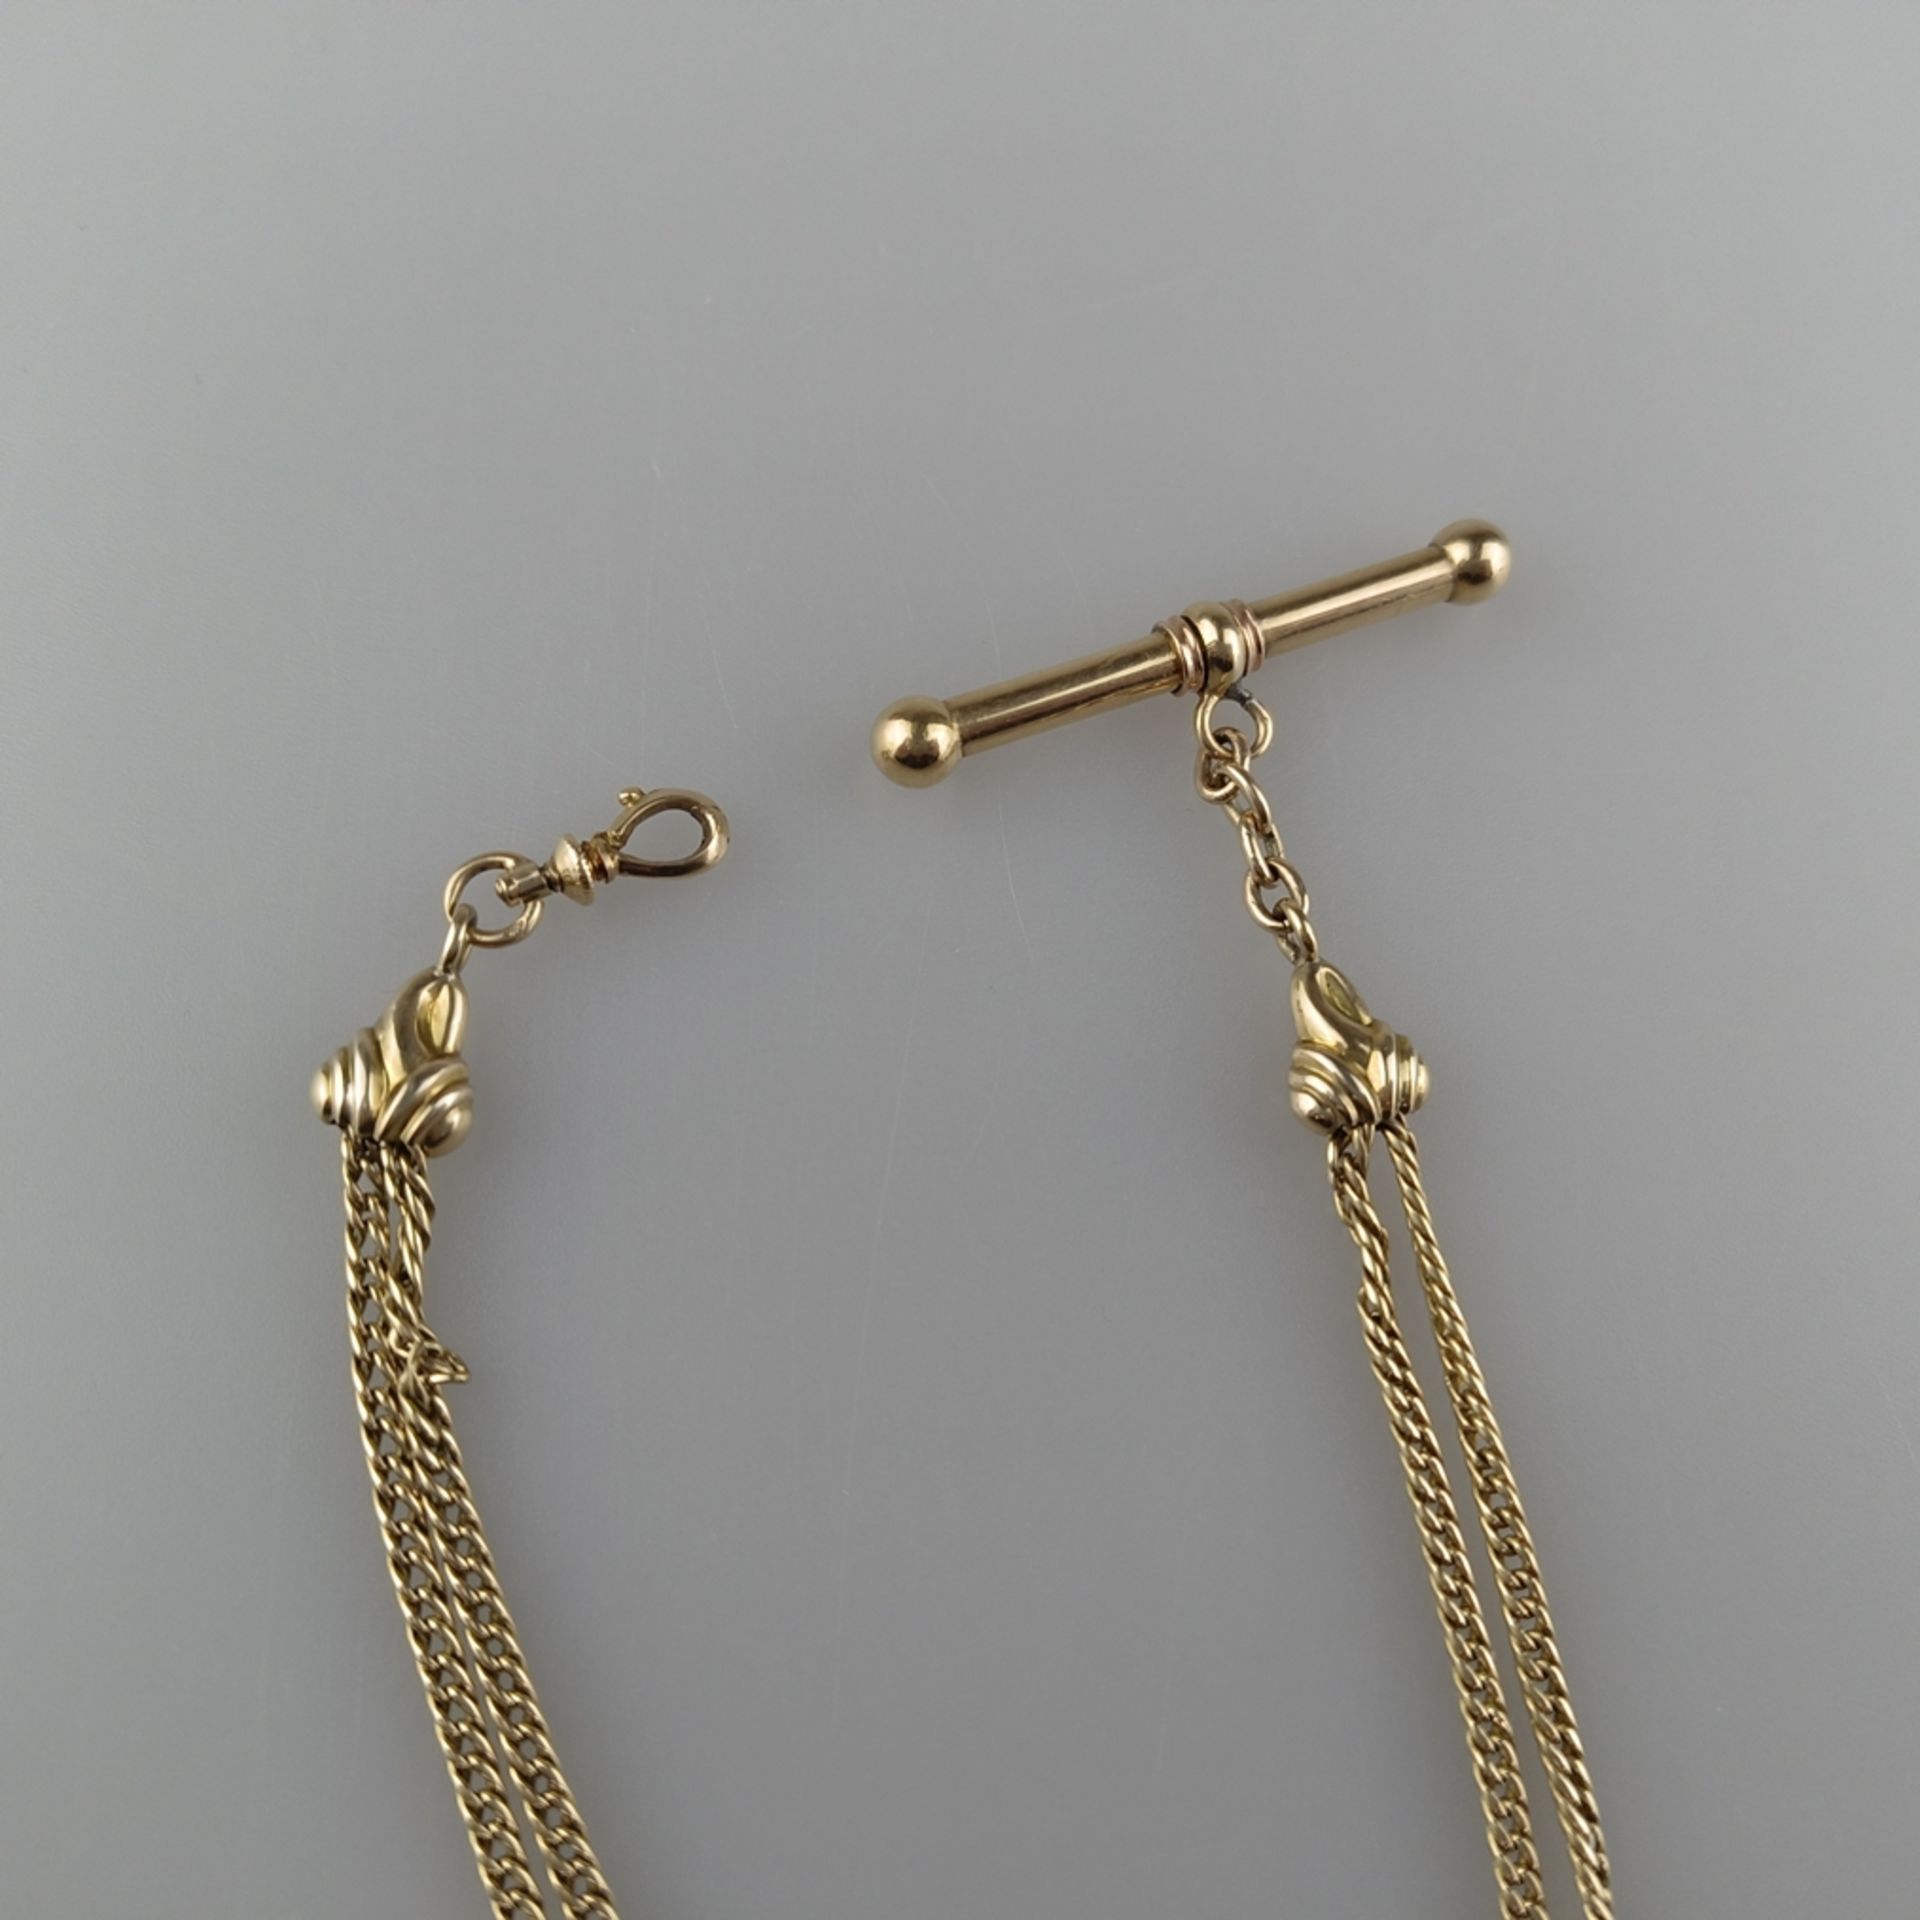 Taschenuhren-Knebelkette - 14K Gelbgold (585/000), mit ovalem Medaillonanhänger aus Schaumgold, L.  - Bild 4 aus 5